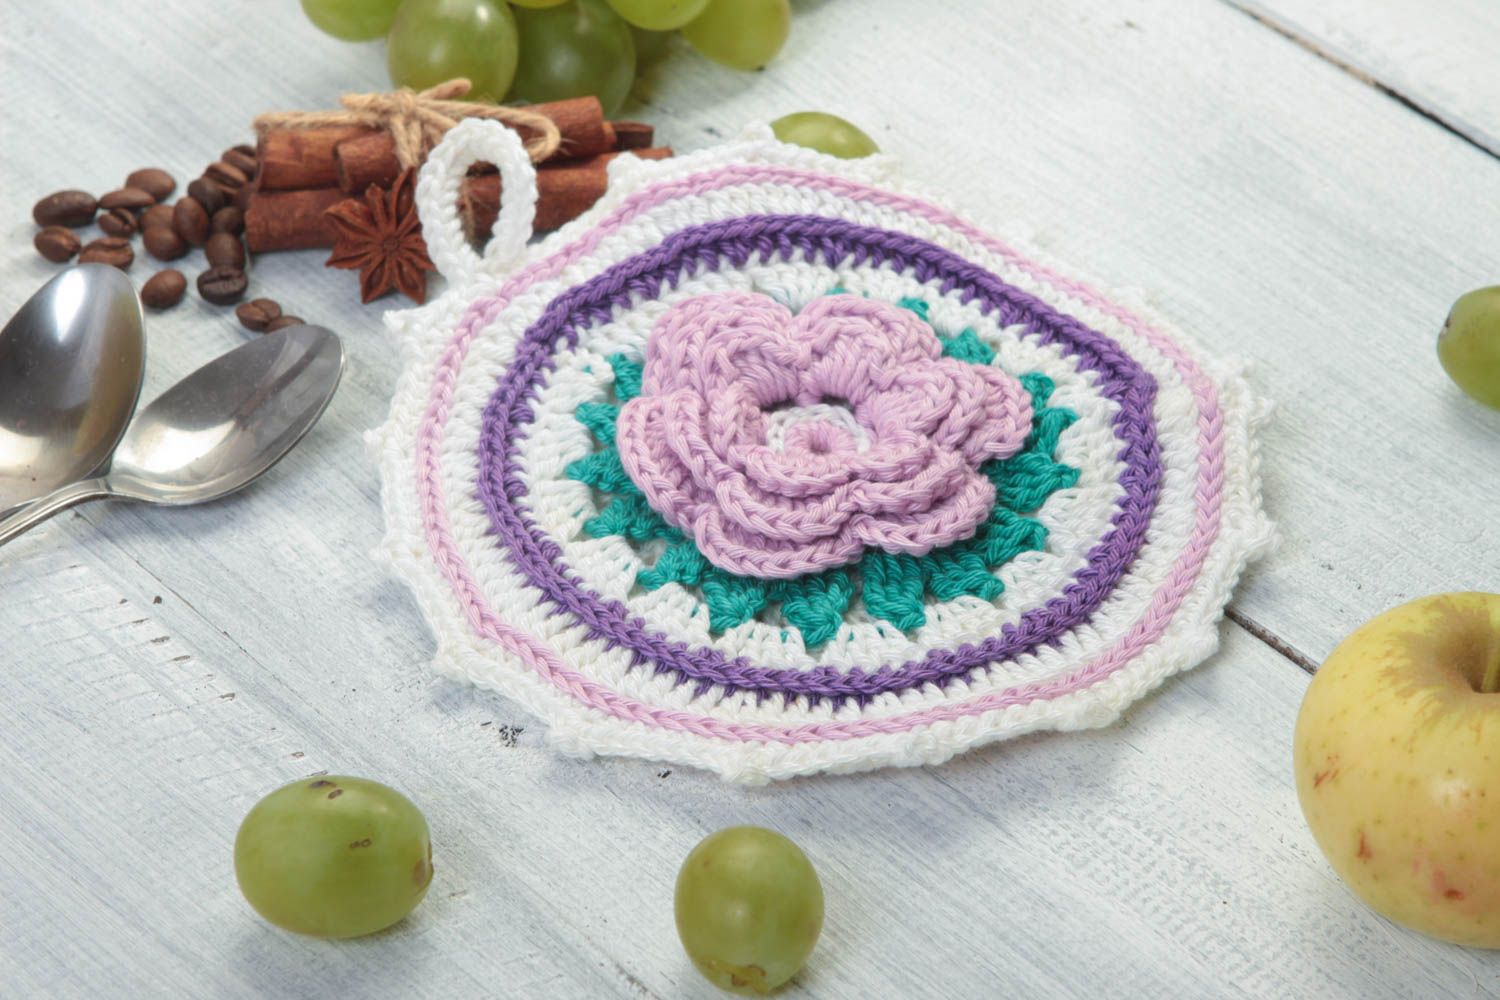 Unusual handmade pot holder homemade crochet potholder home goods gift ideas photo 1